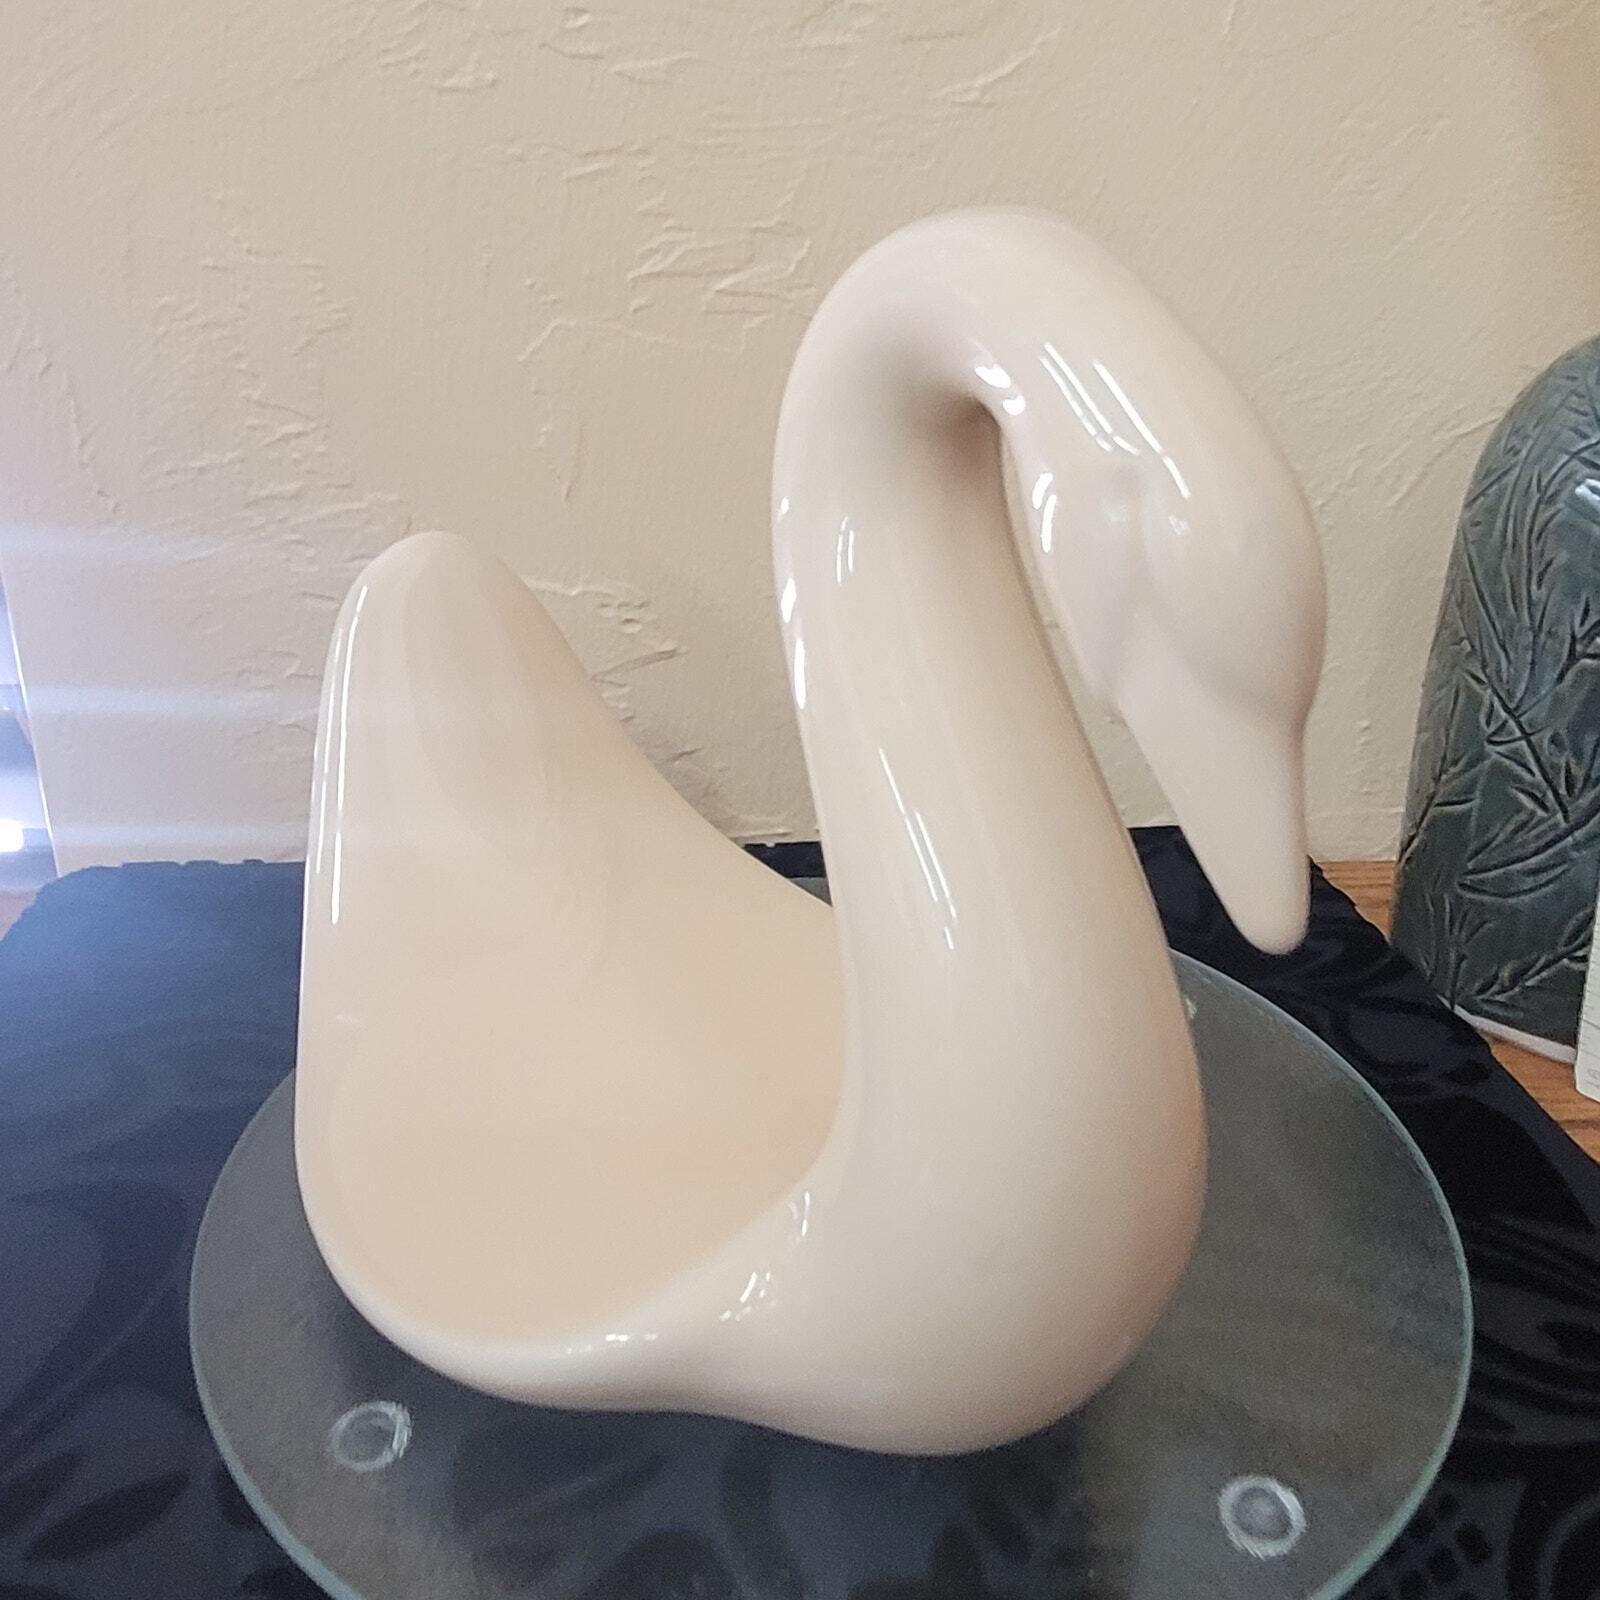 MCM White Swan Glazed Ceramic Hand Towel Holder 